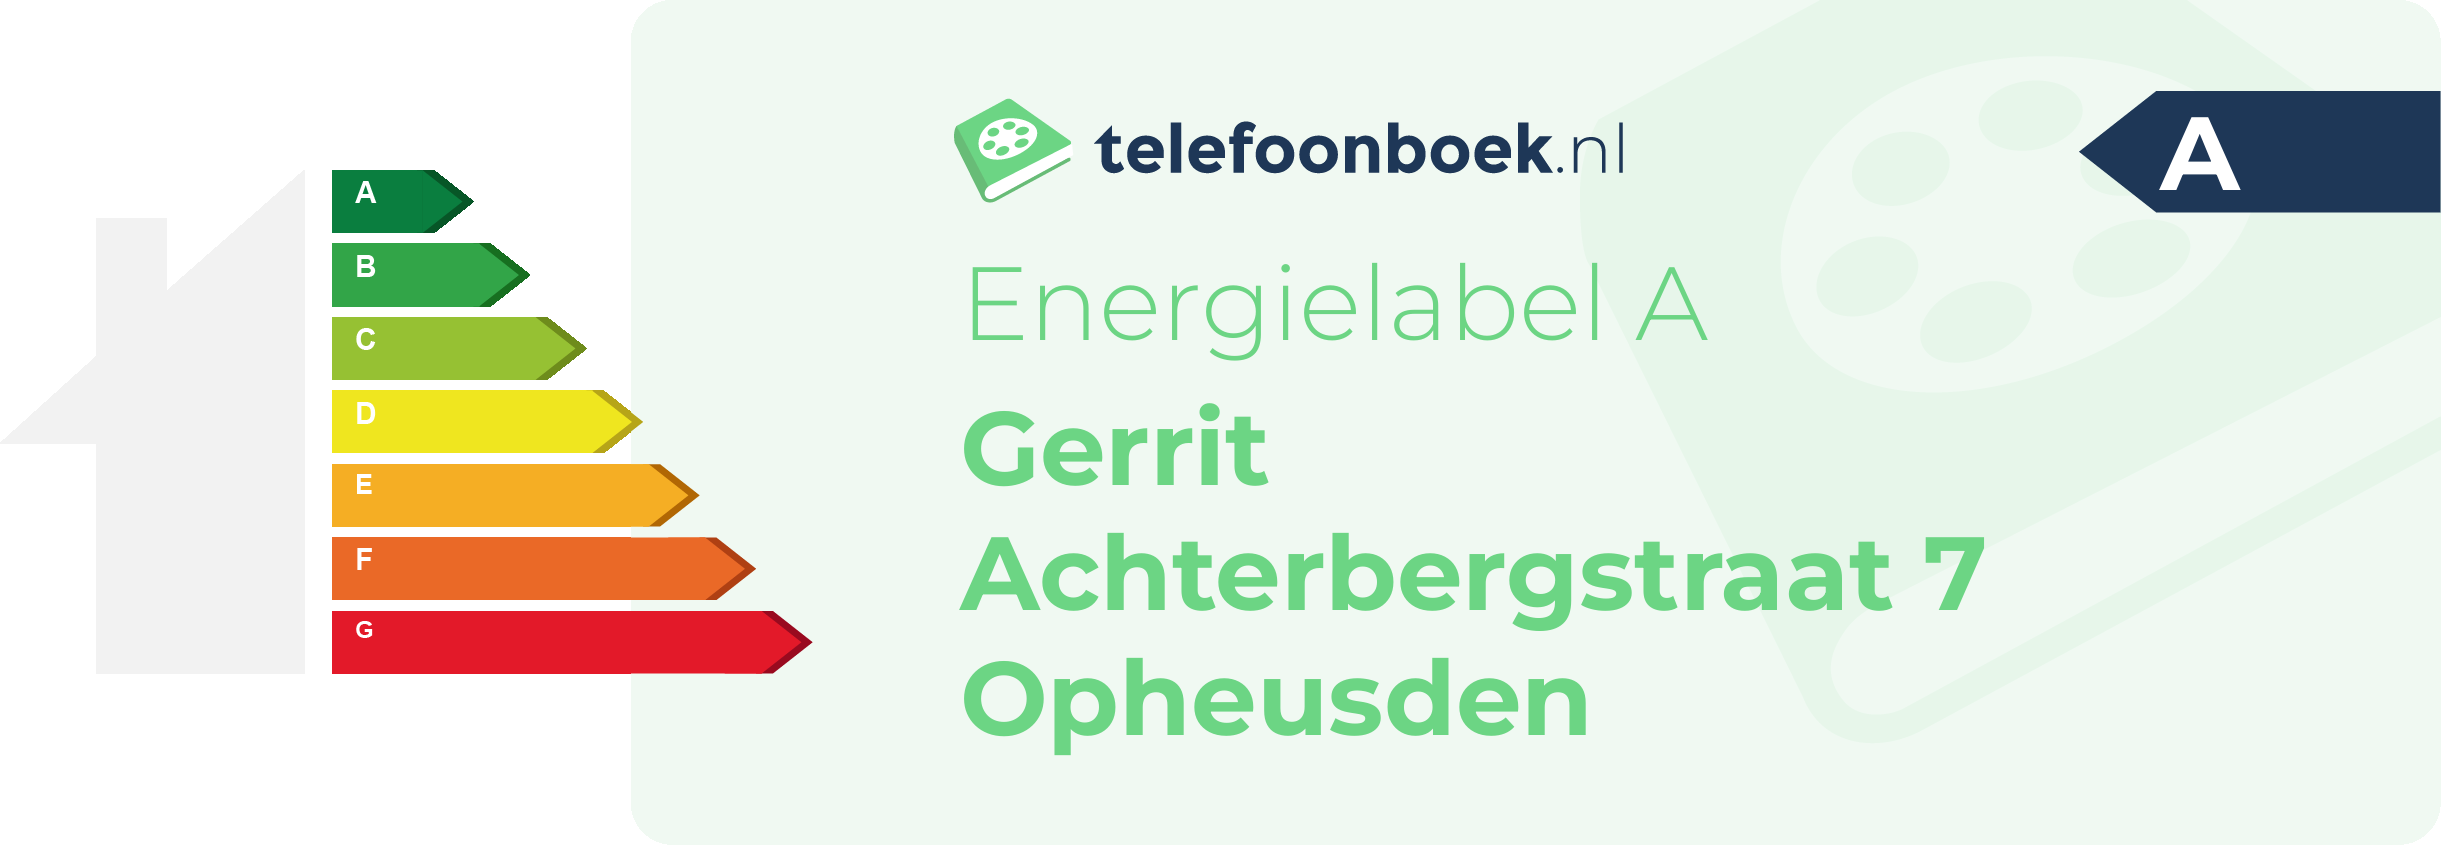 Energielabel Gerrit Achterbergstraat 7 Opheusden